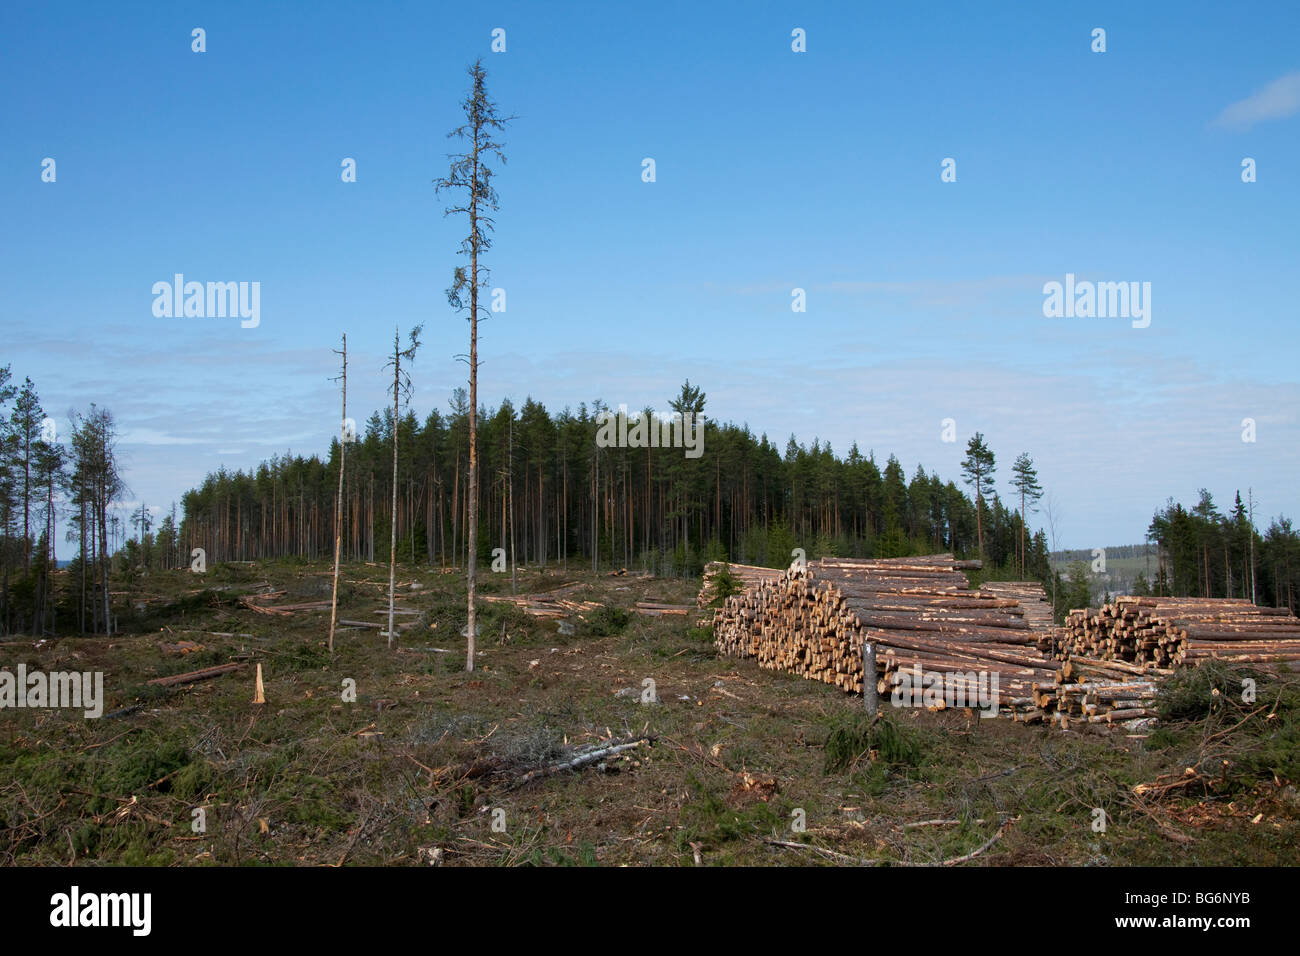 La déforestation provoquée par l'industrie forestière montrant des piles de journaux de coupe / arbres / bois de forêt de pins, la Suède Banque D'Images